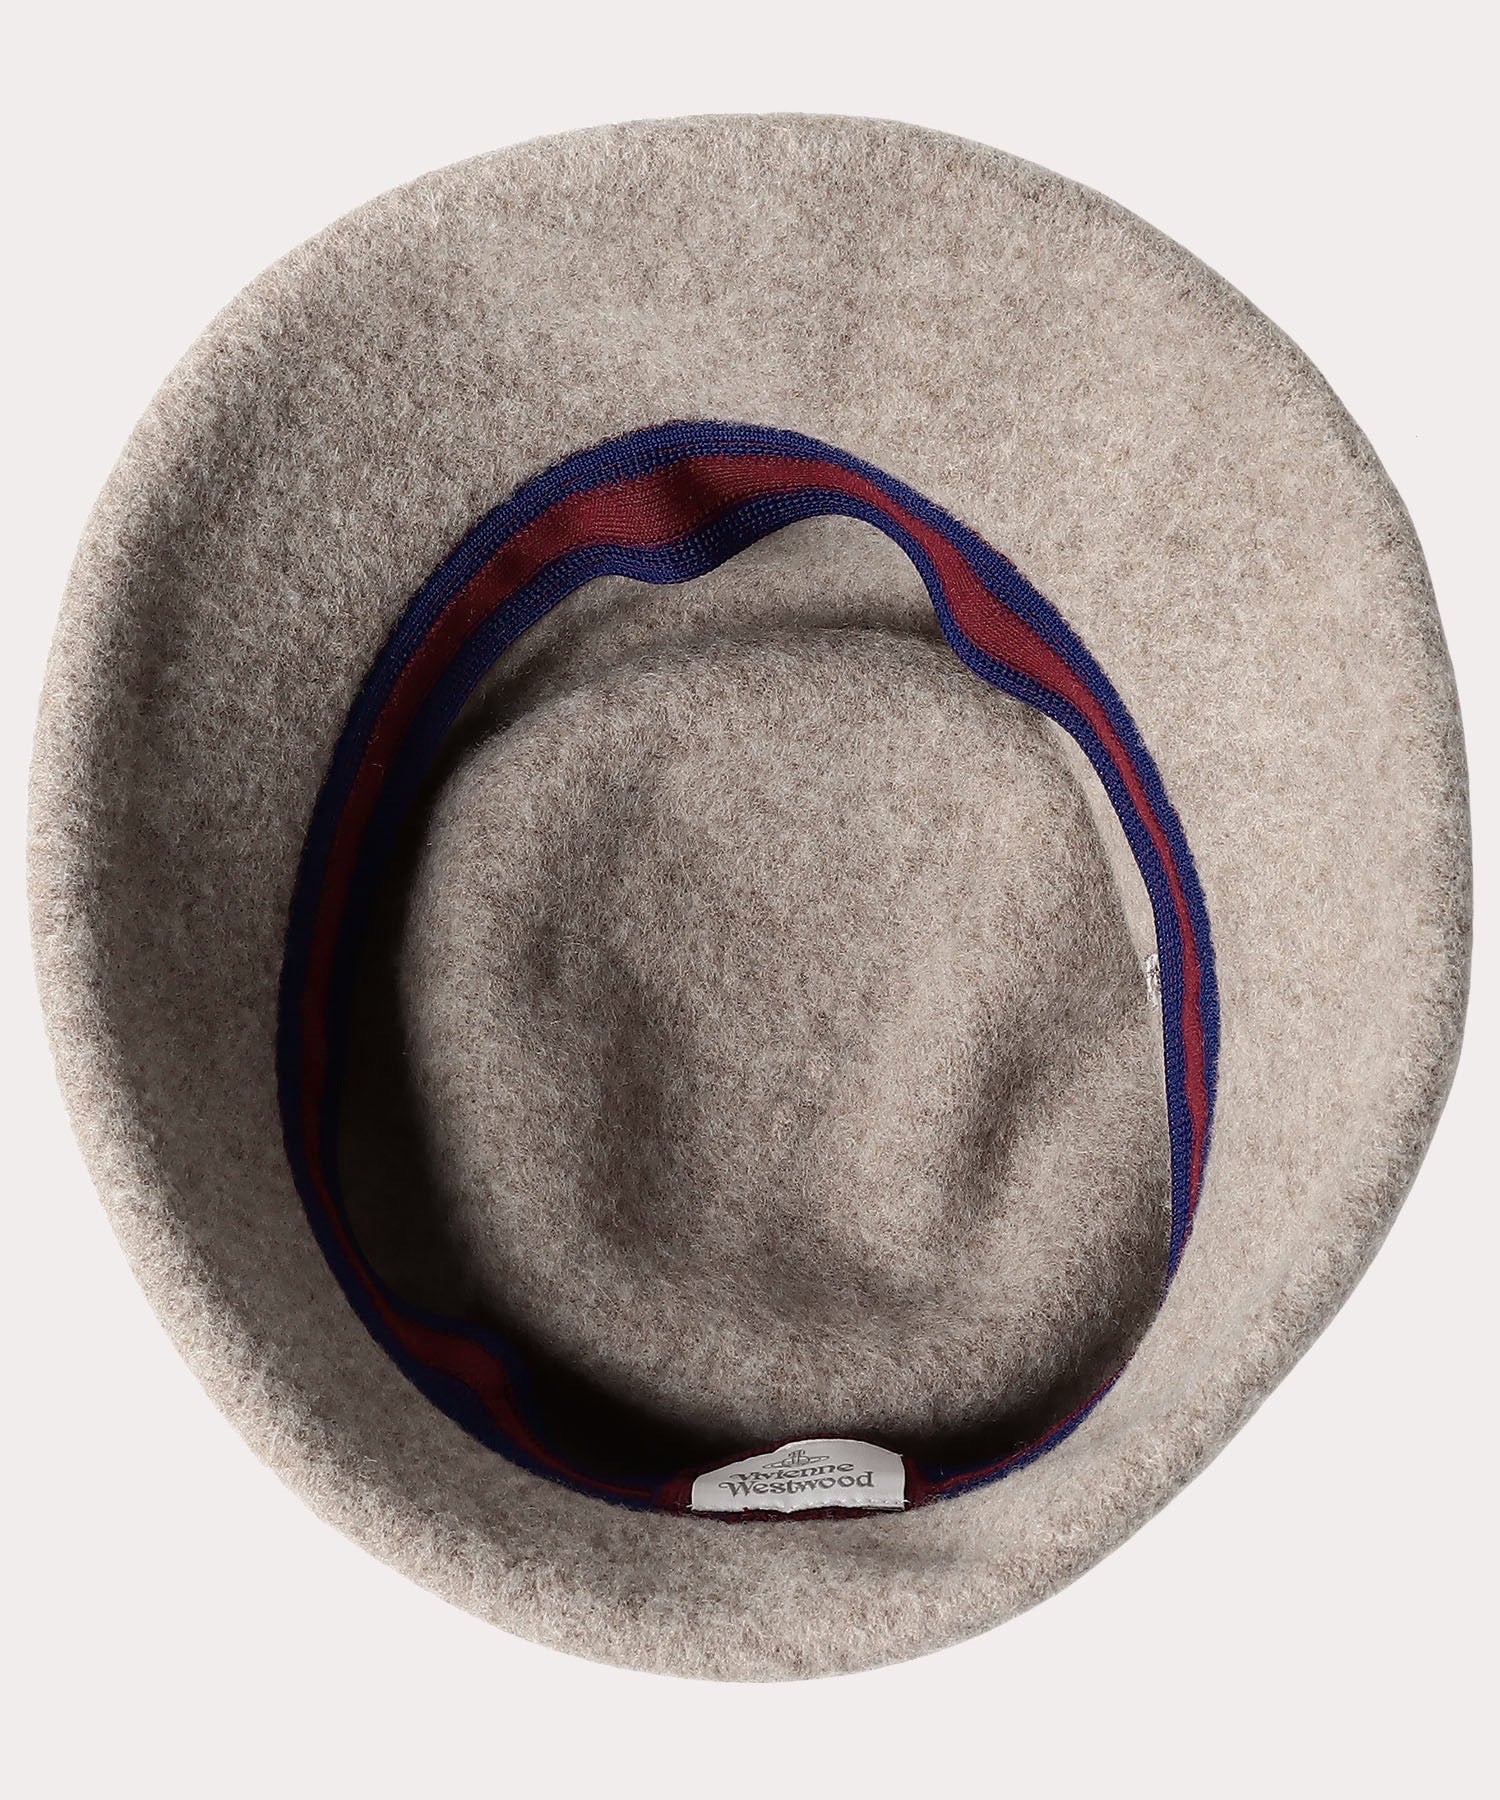 Vivienne Westwood西太后100%羊毛盆帽 3色选